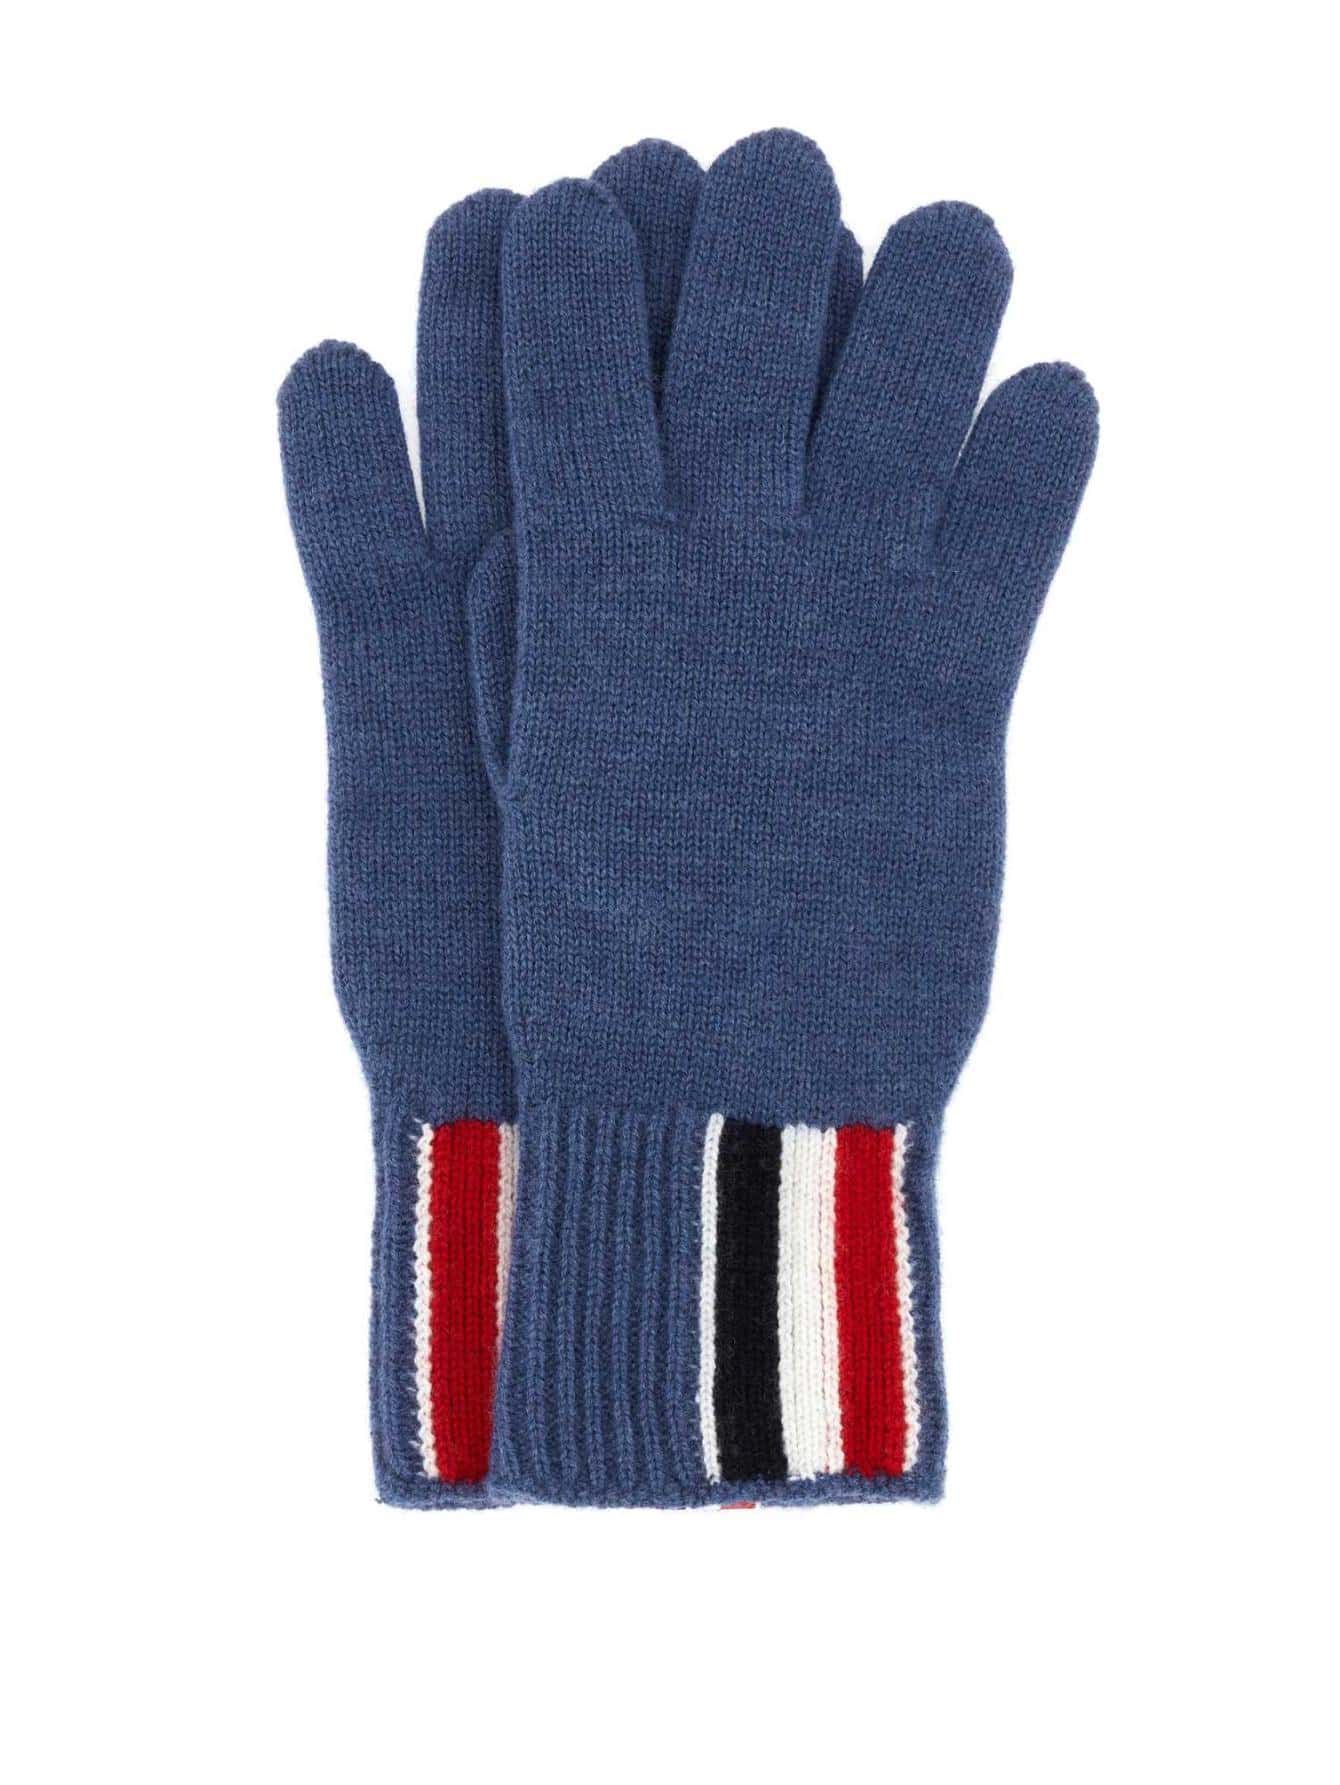 Мужские перчатки Thom Browne BLUE MKG011AY1018435, синий мужские шапки thom browne blue mhc328a03788415 синий